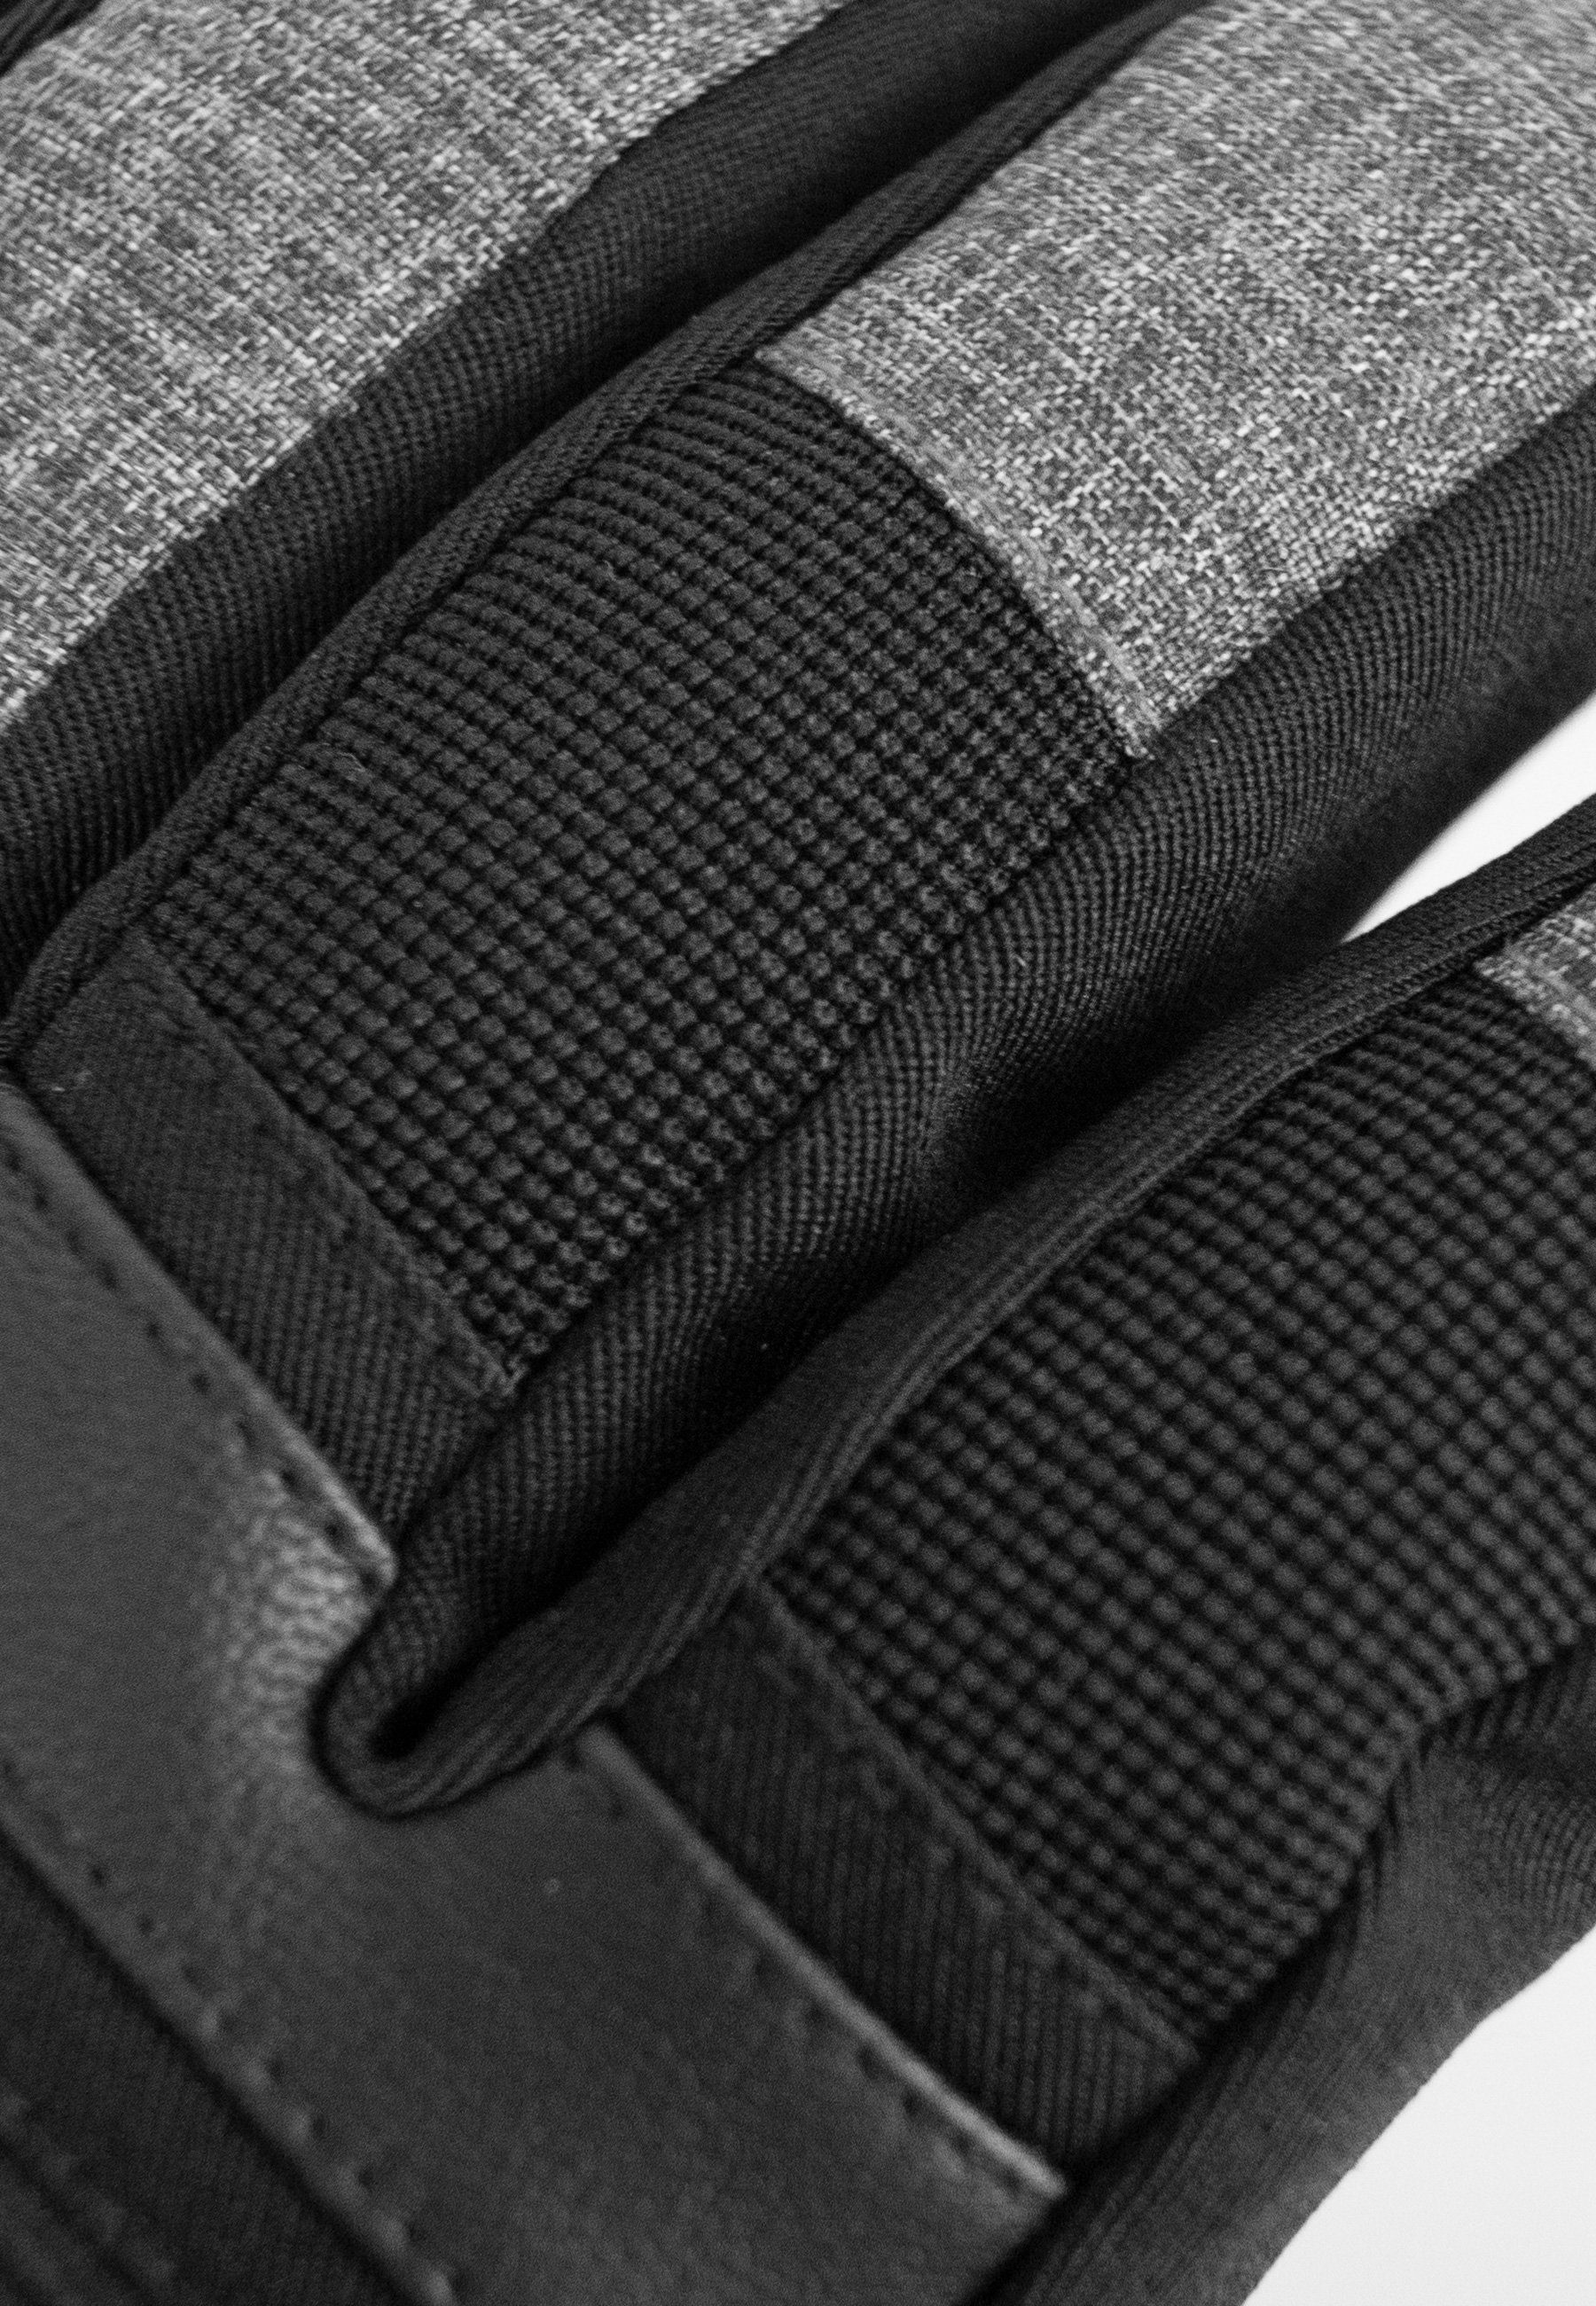 Reusch Skihandschuhe und wasserdichtem schwarz-grau atmungsaktivem Material Venom XT R-TEX® aus